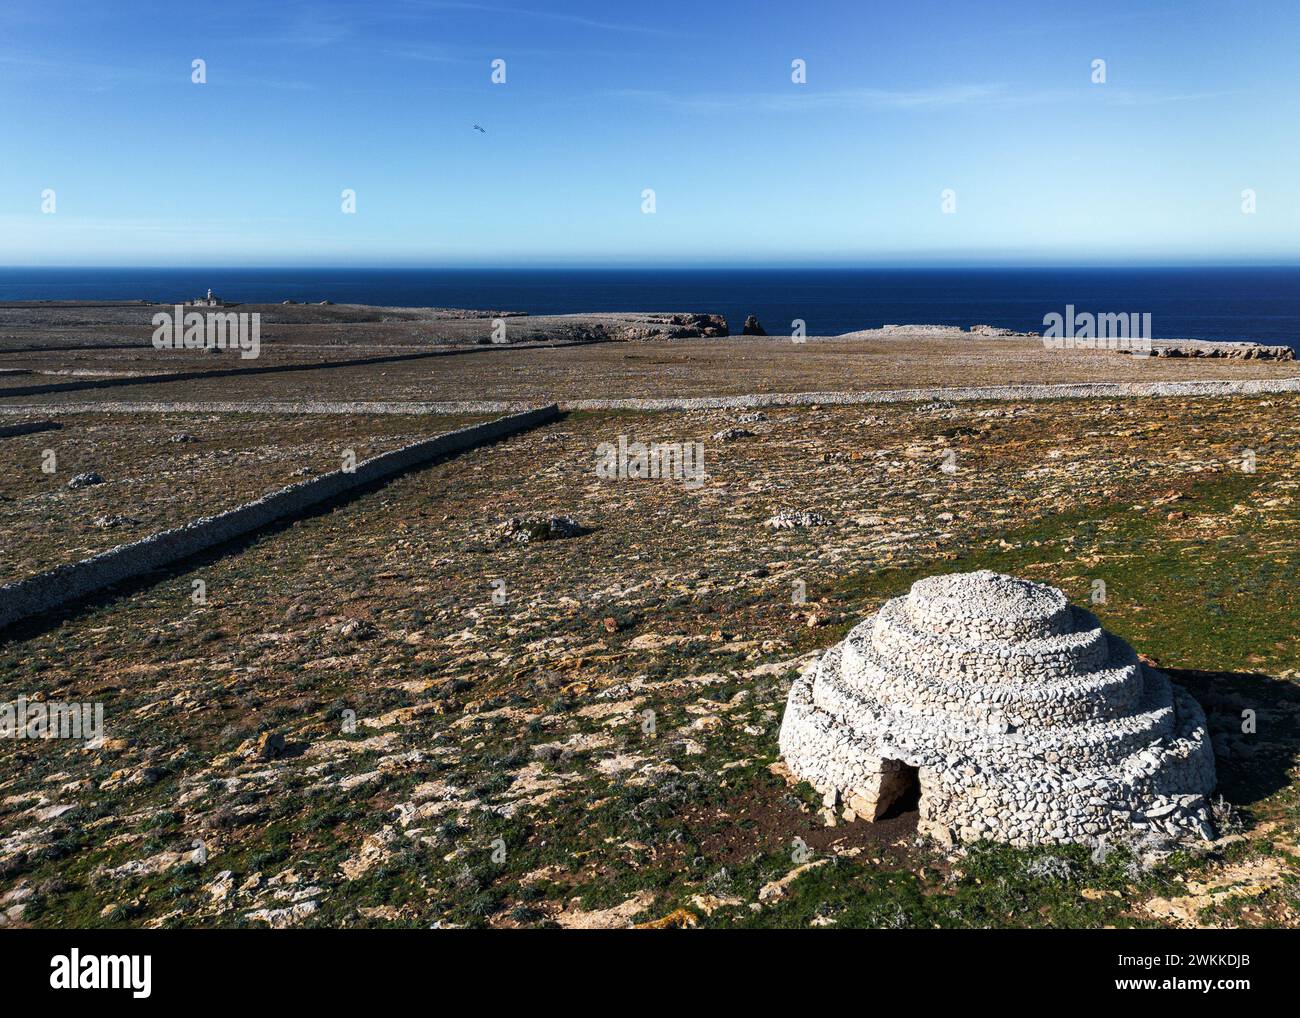 Ein Blick auf die typischen Steinmauern und Felder, die die historischen Talayot Steinhäuser auf Menorca in Spanien umgeben Stockfoto